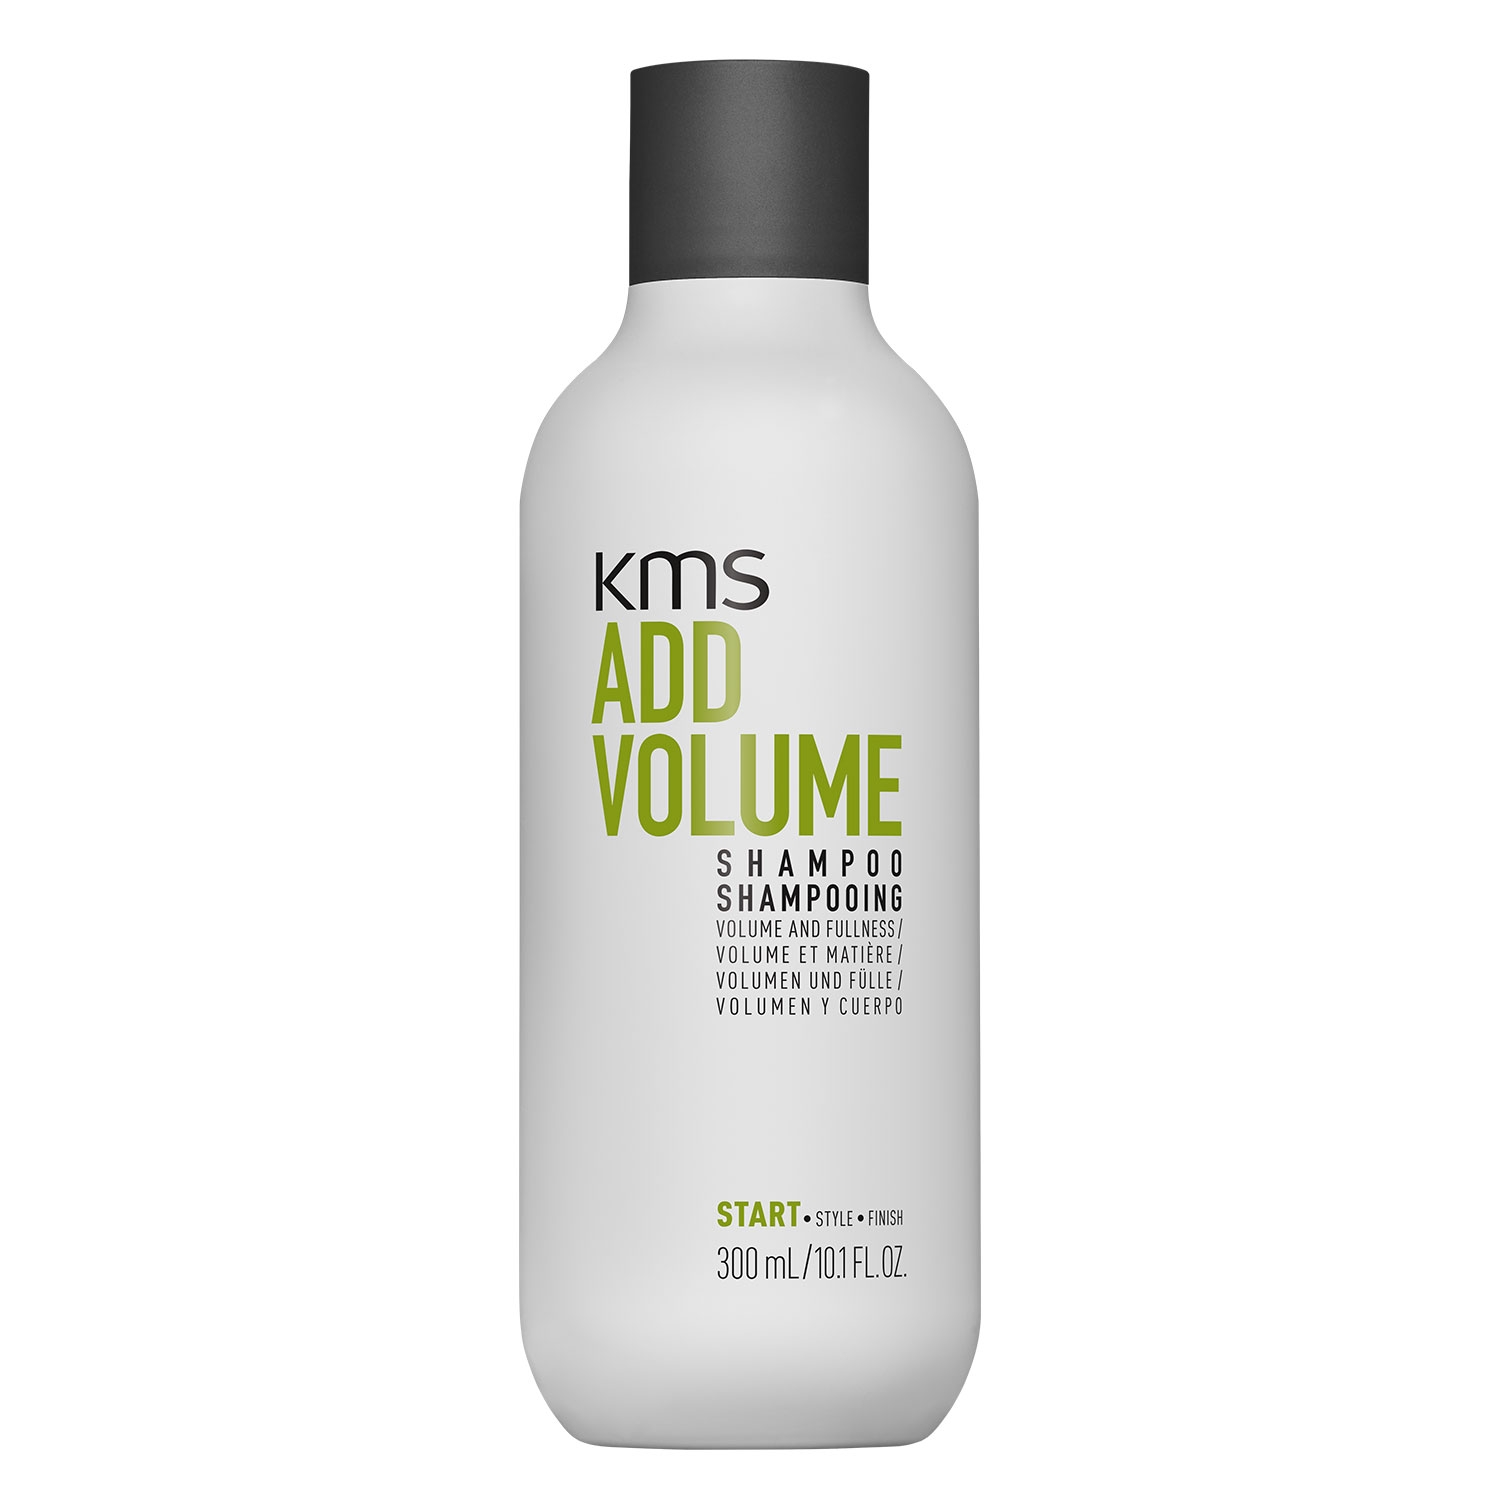 Produktbild von Addvolume - Shampoo Volume & Fullness